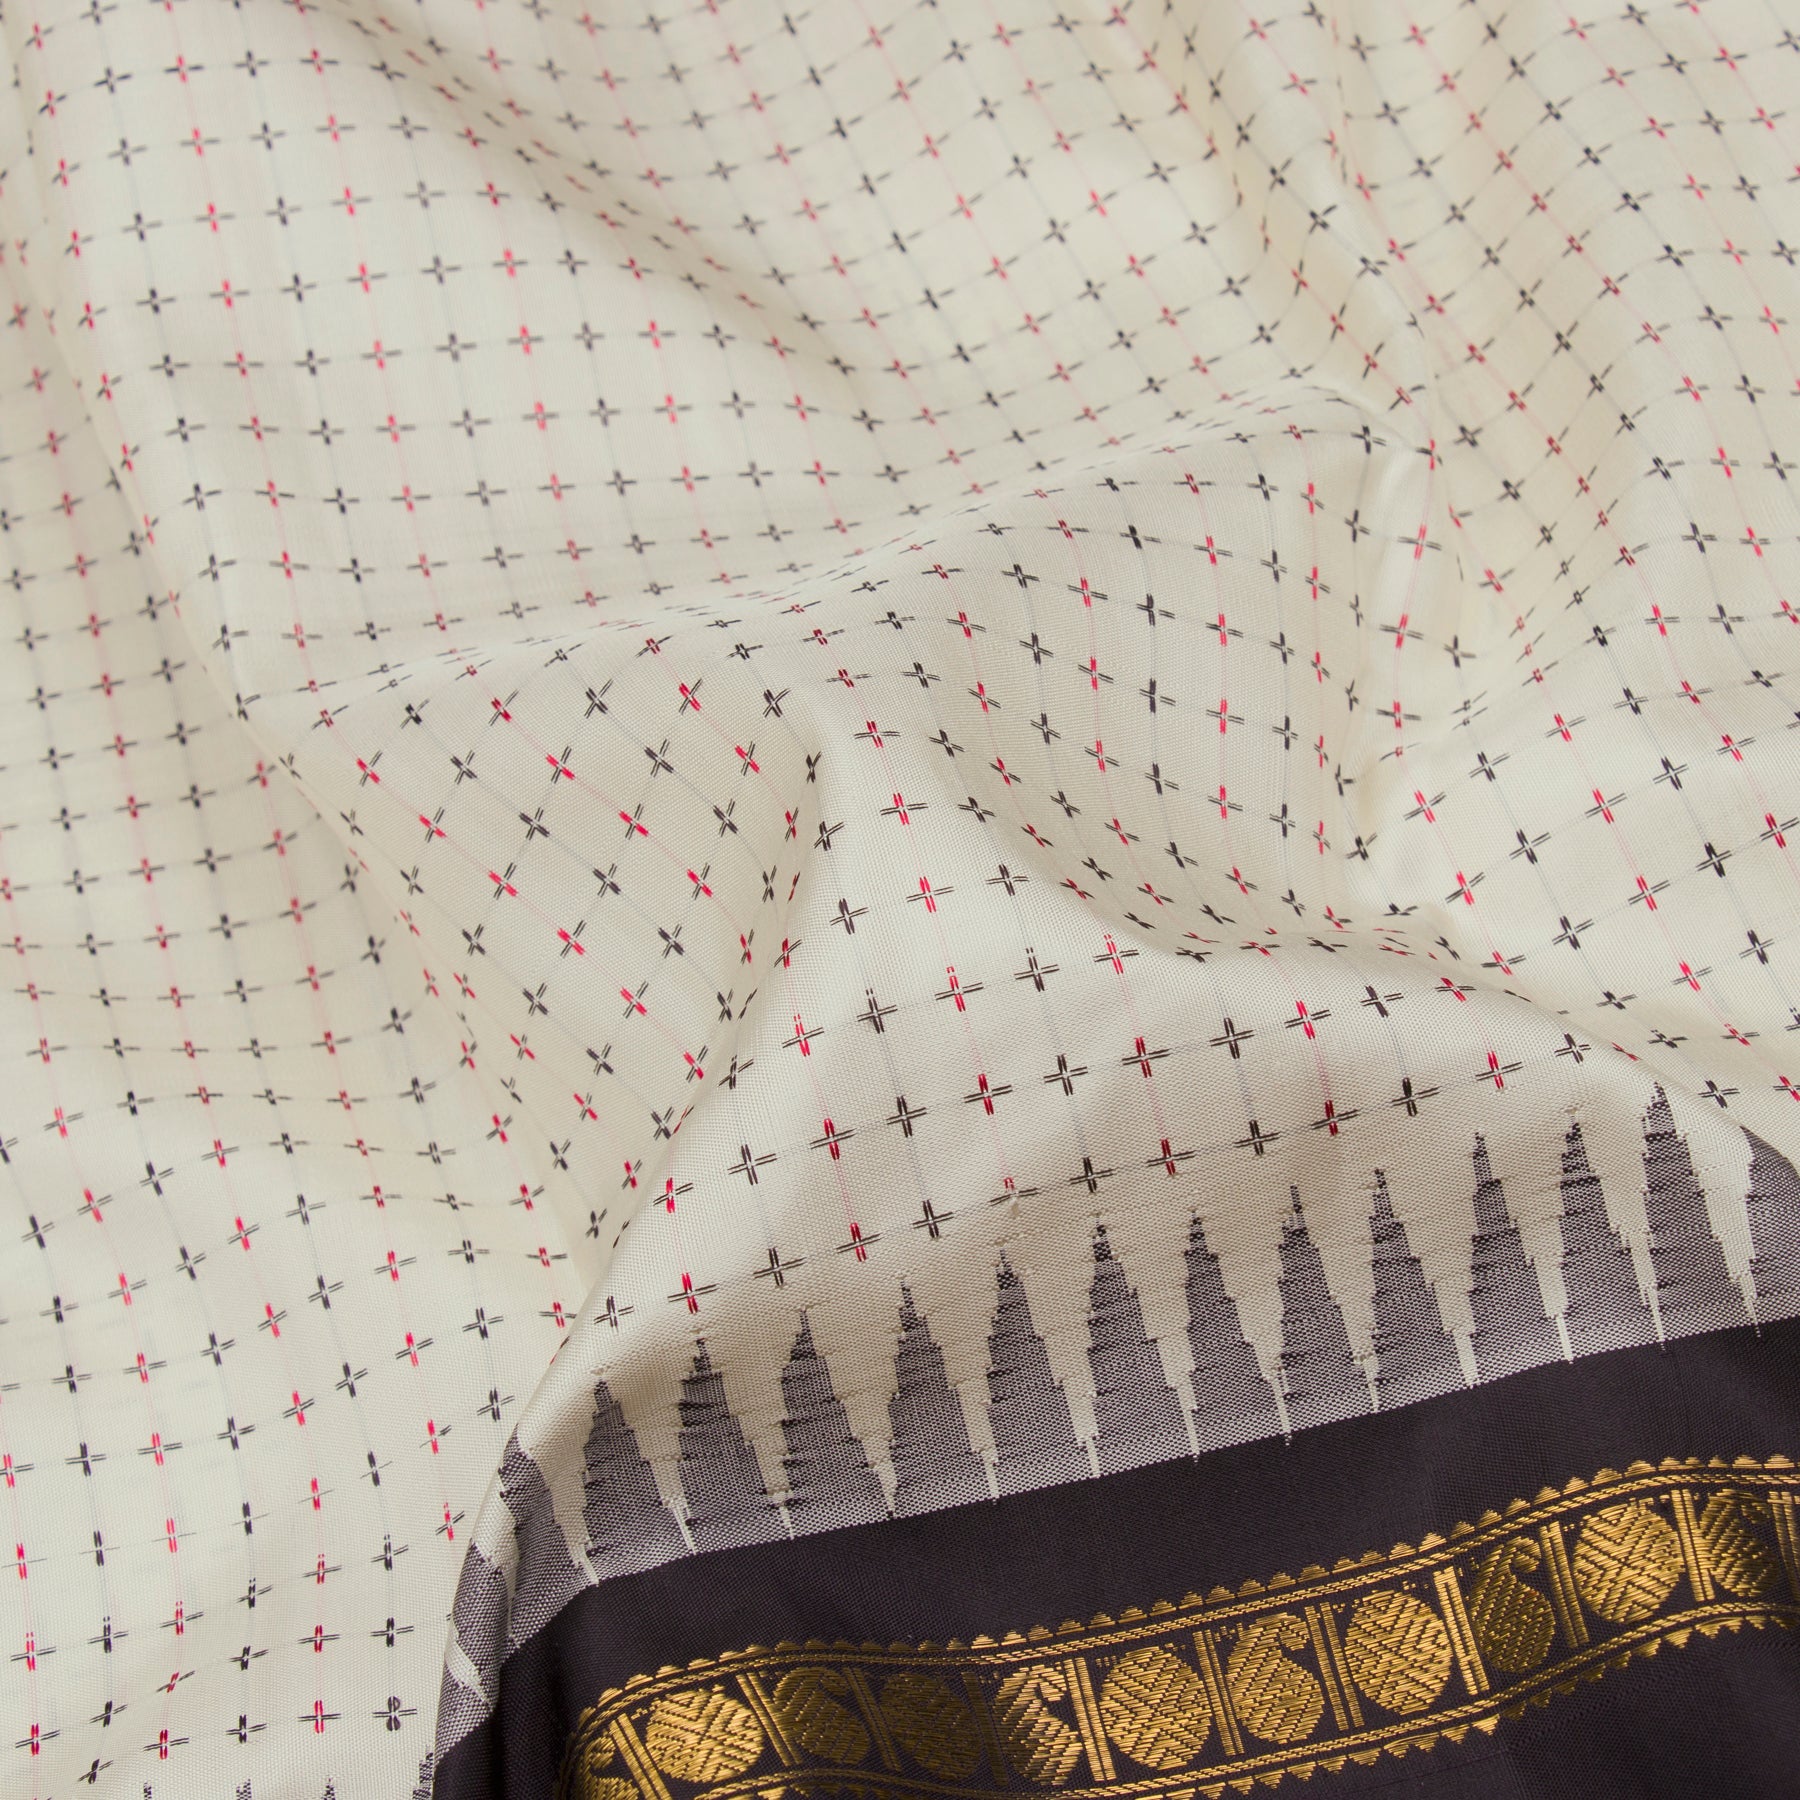 Kanakavalli Kanjivaram Silk Sari 23-595-HS001-10659 - Fabric View